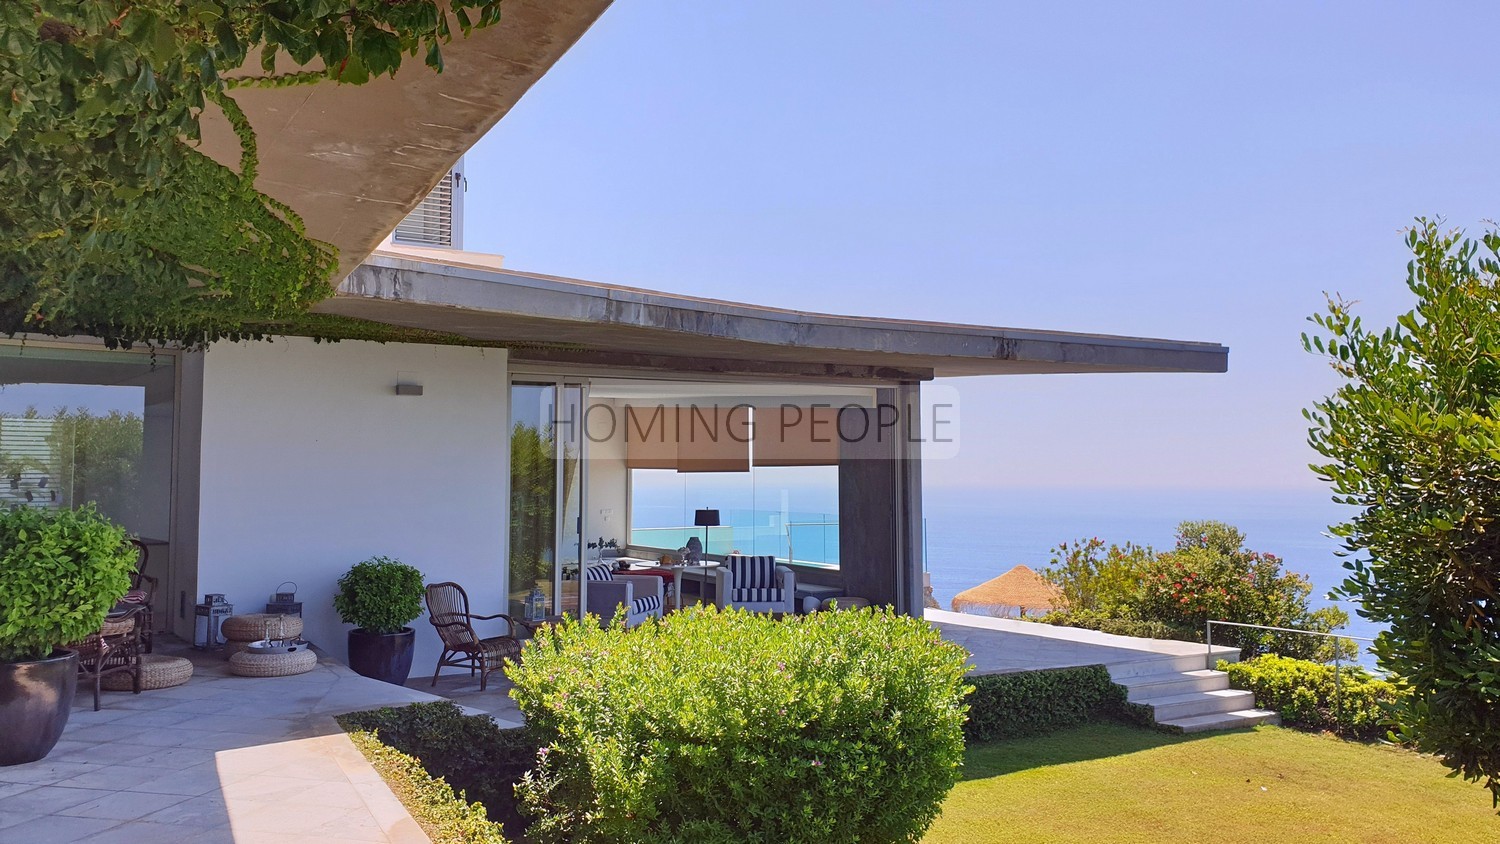 Magnifique villa moderne de design sur une falaise surplombant la Méditerranée